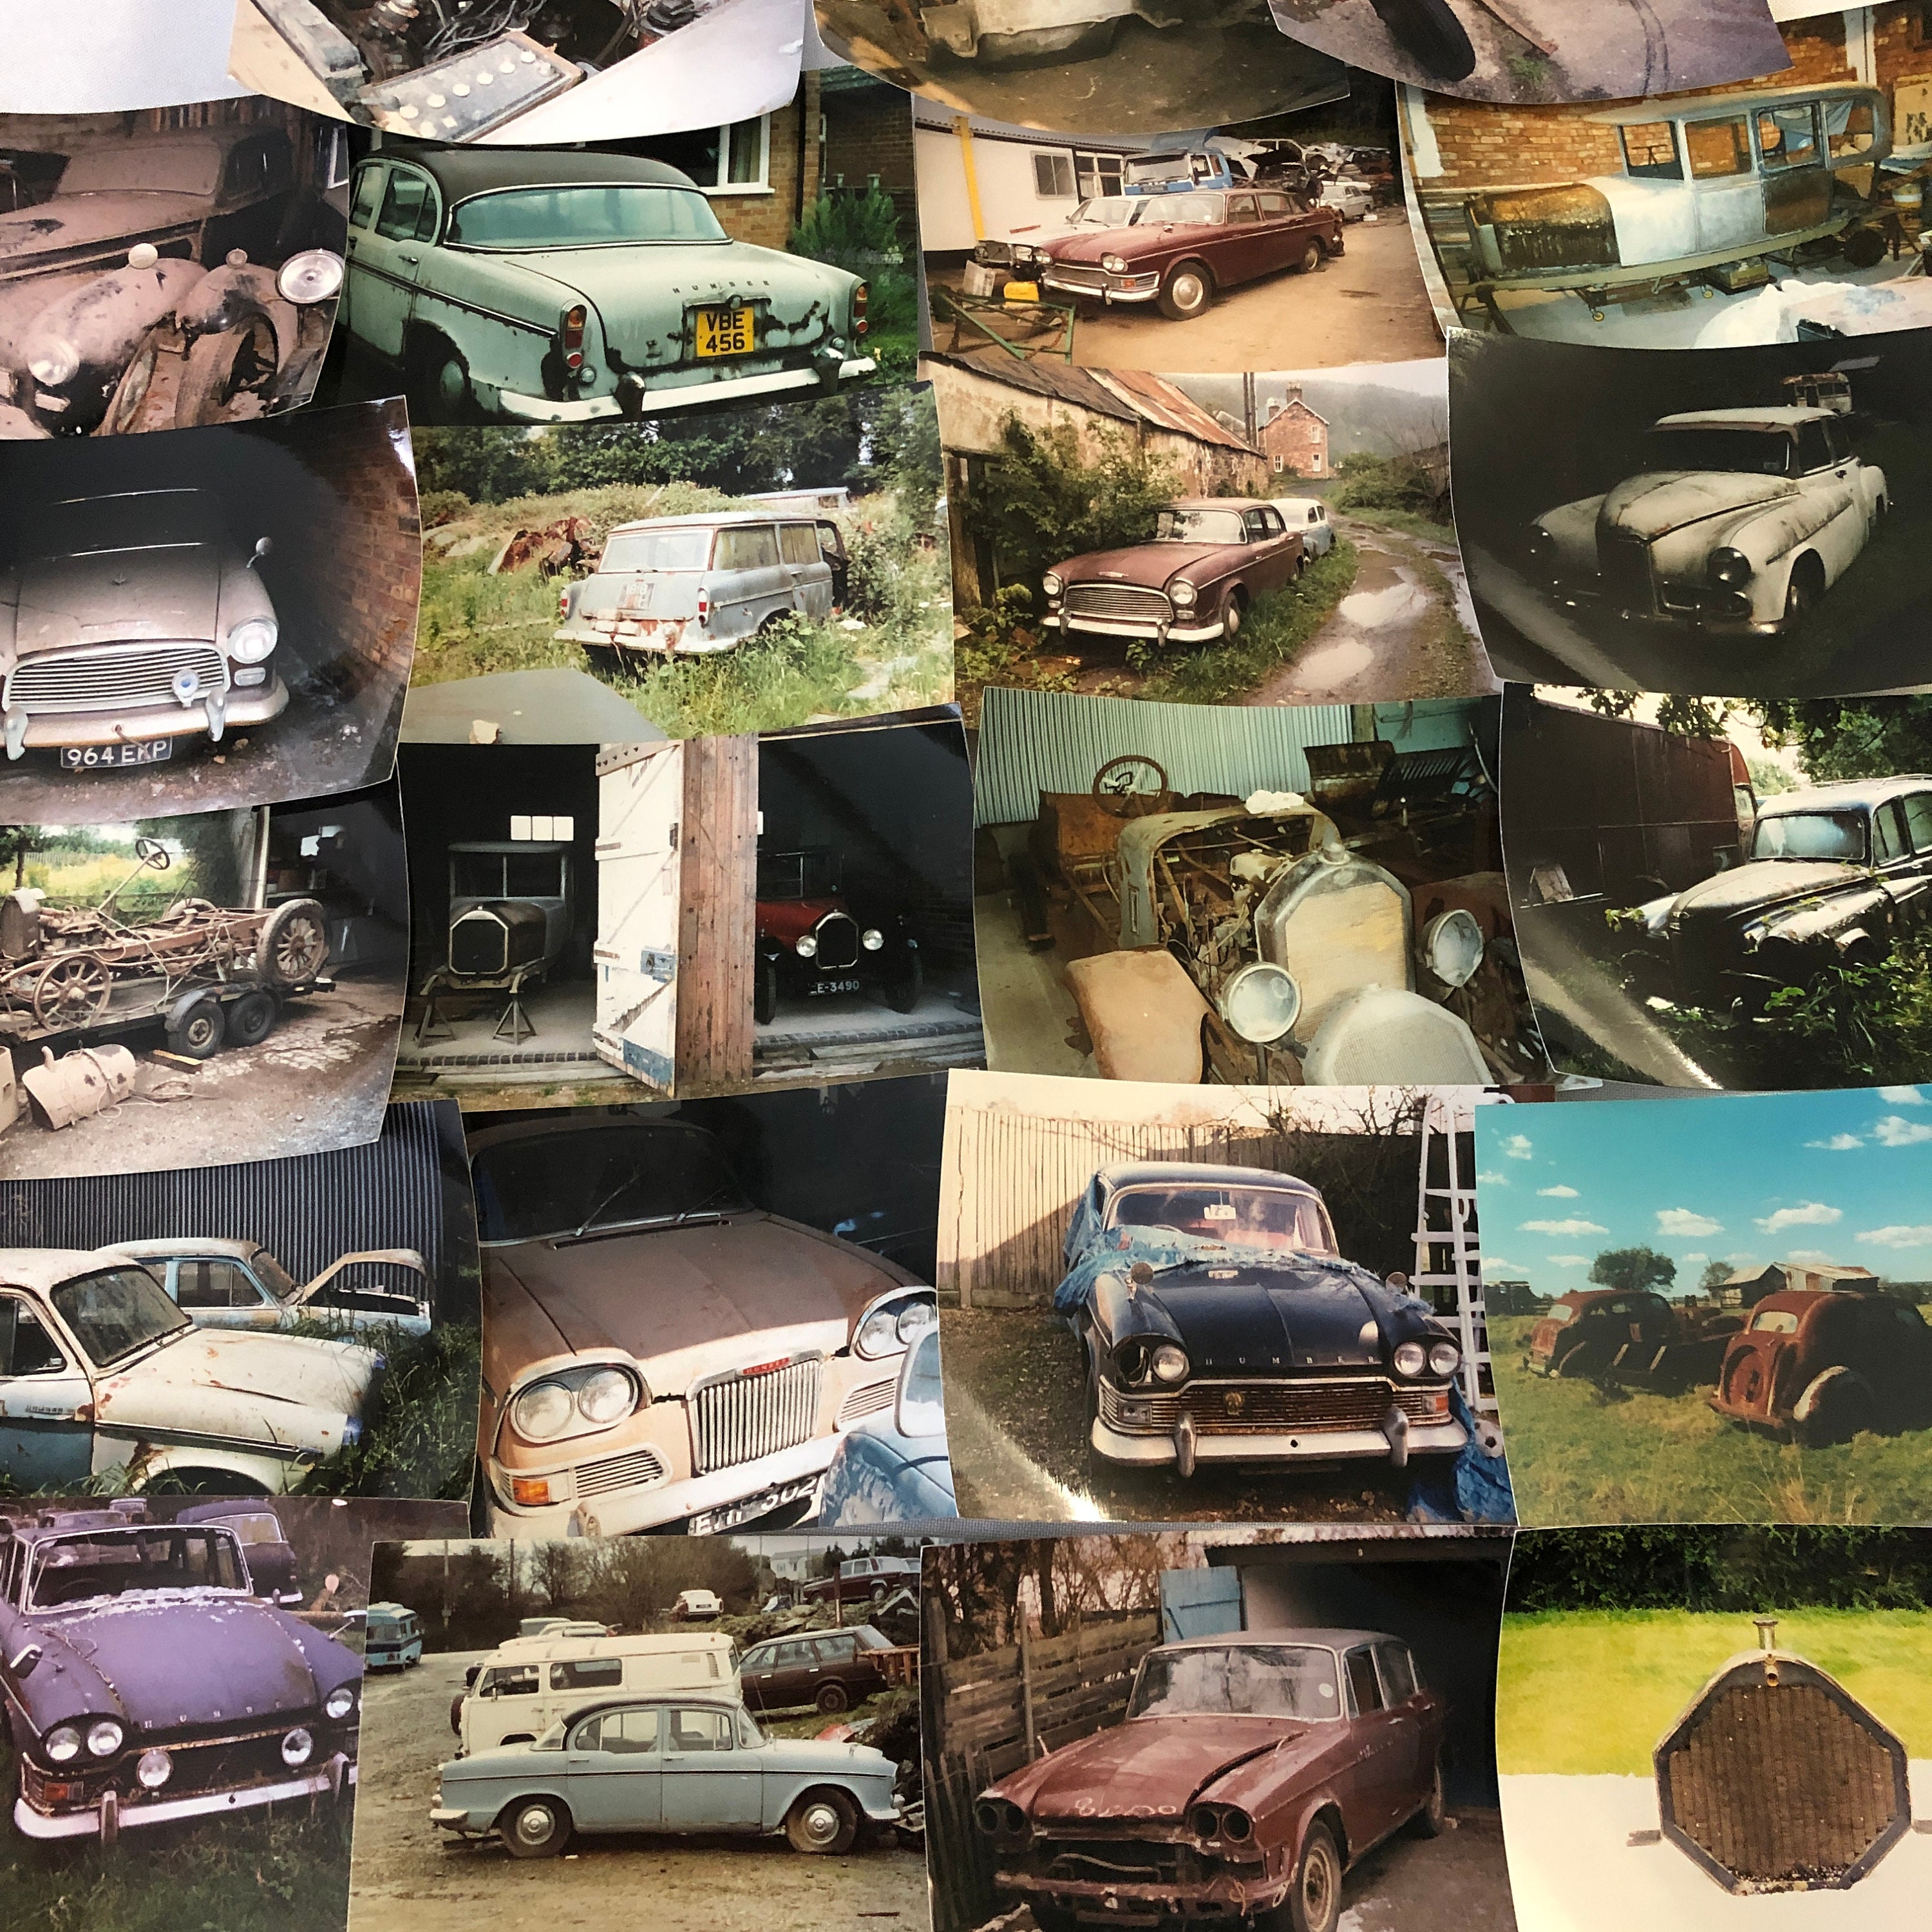 Vintage Humber Car Barn Find Junk Yard AutoTeil Fotofotografie Lot